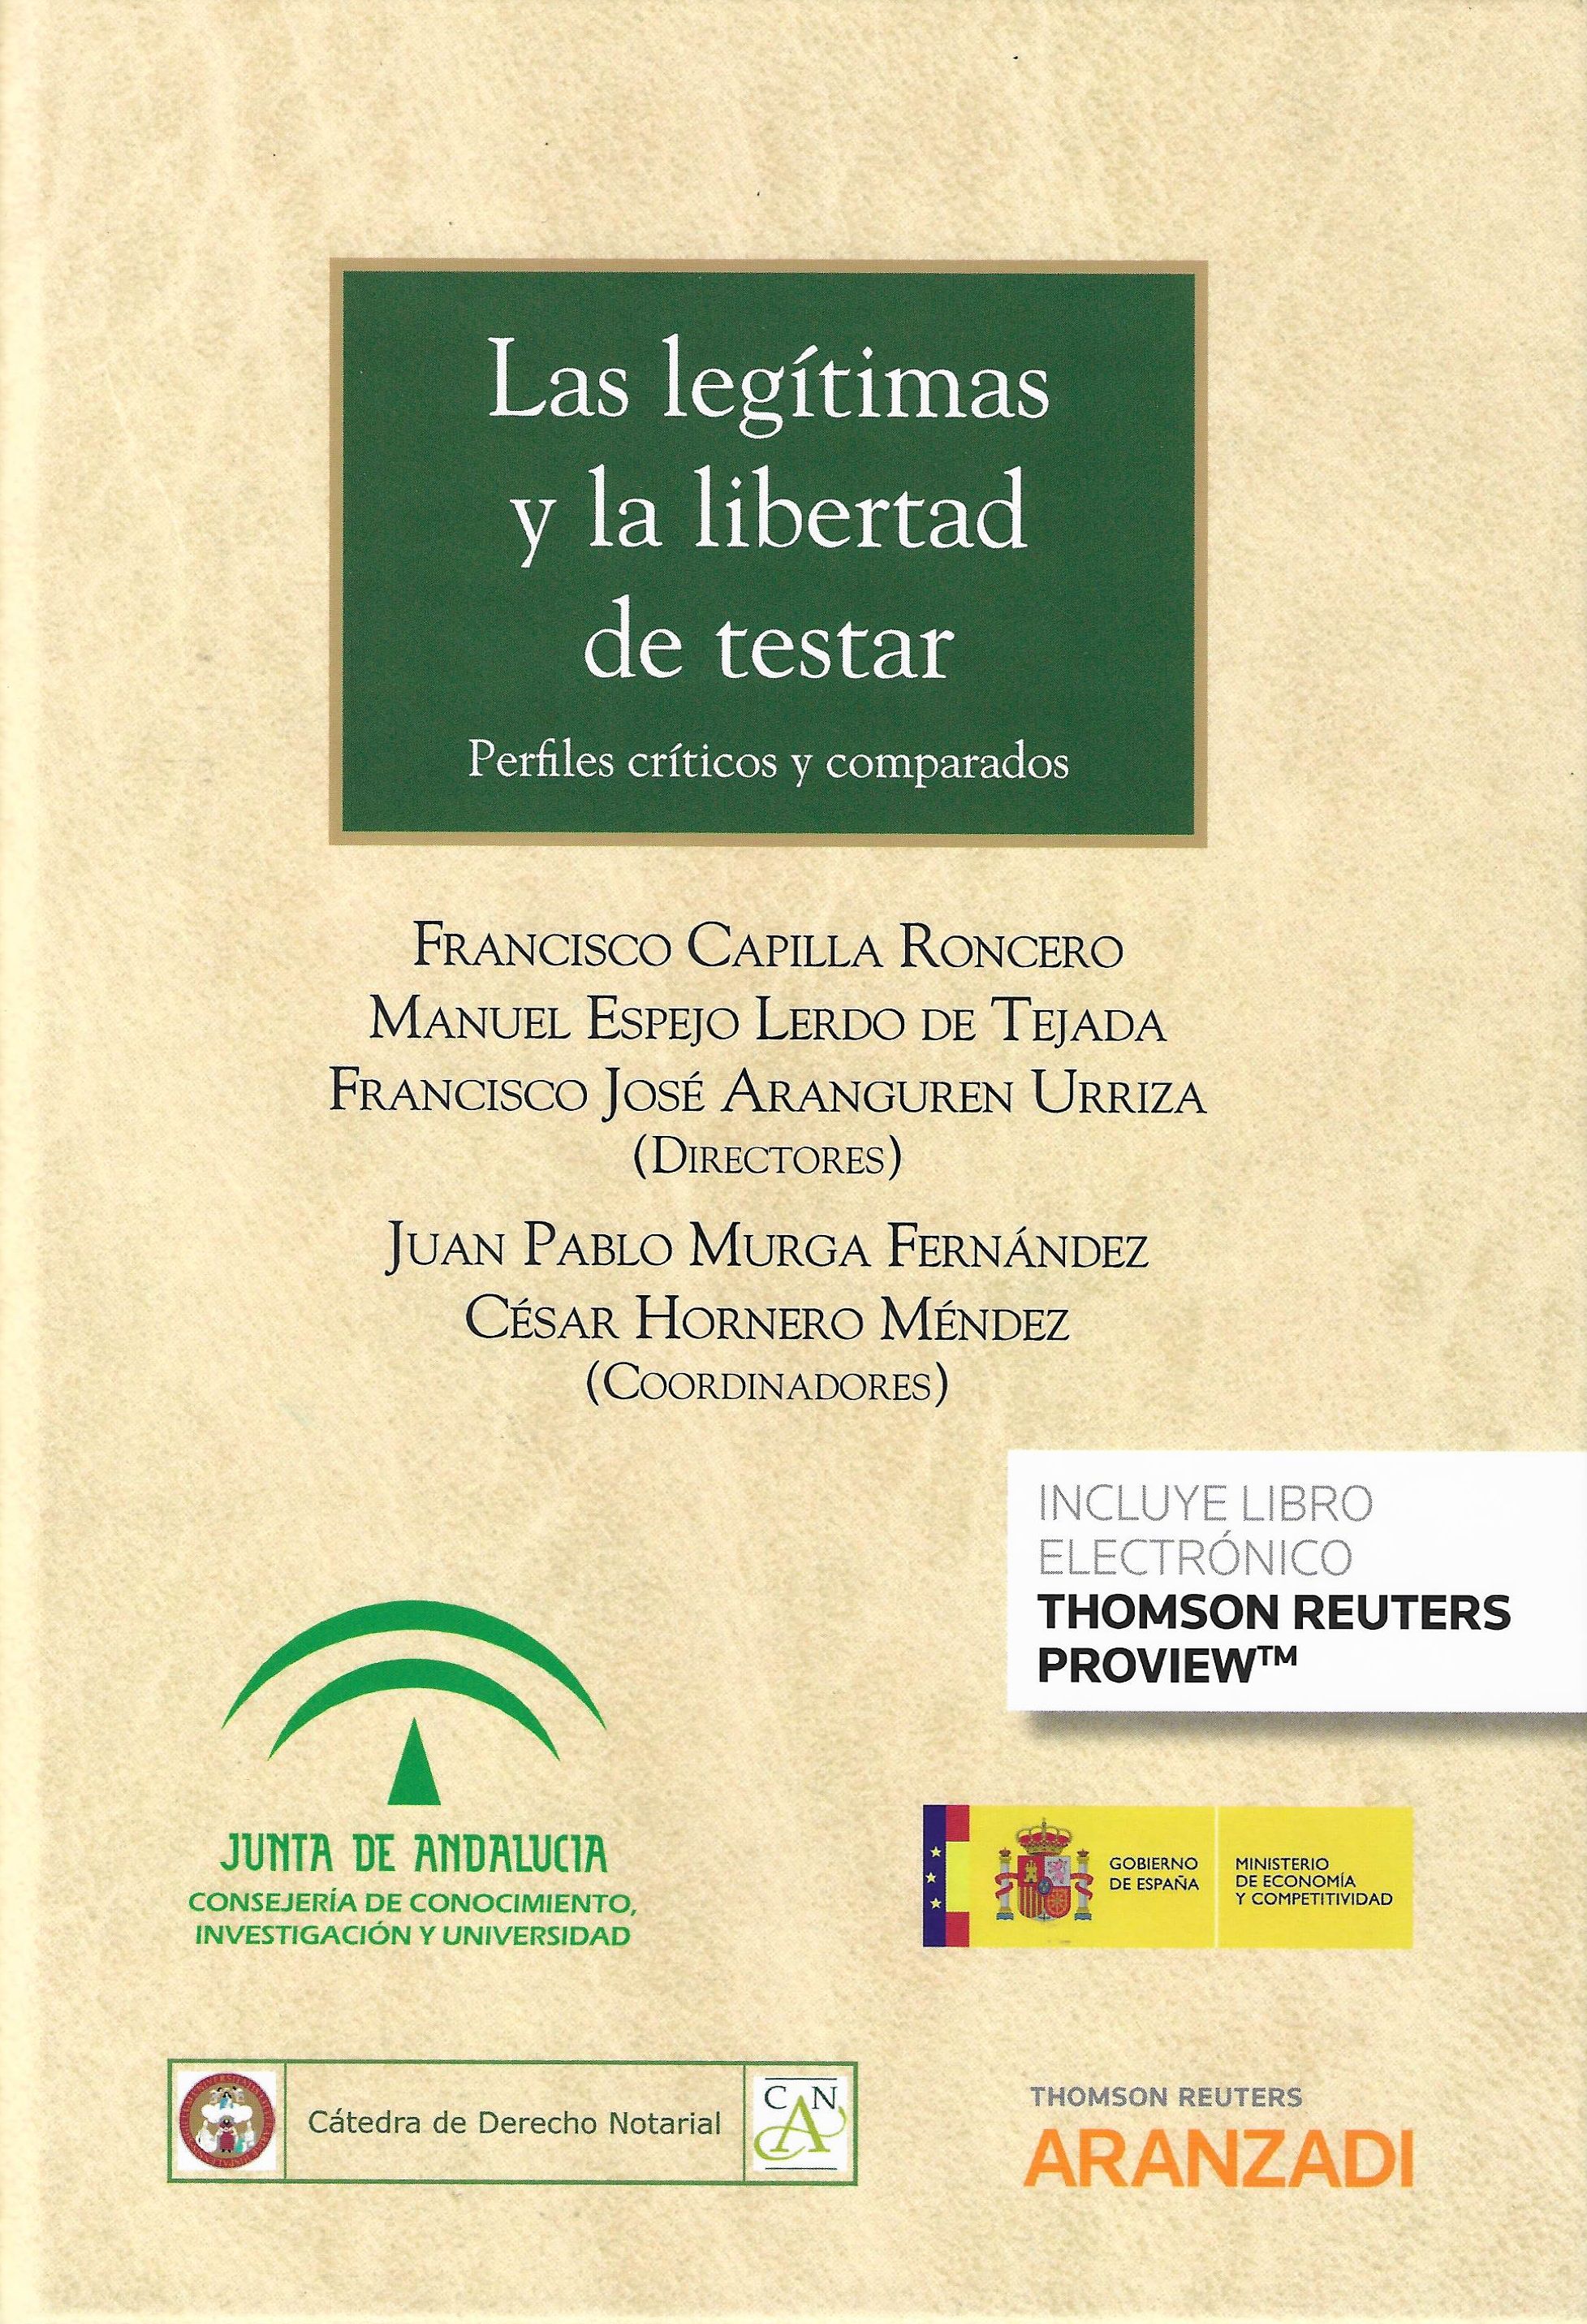 Imagen de portada del libro Las legítimas y la libertad de testar